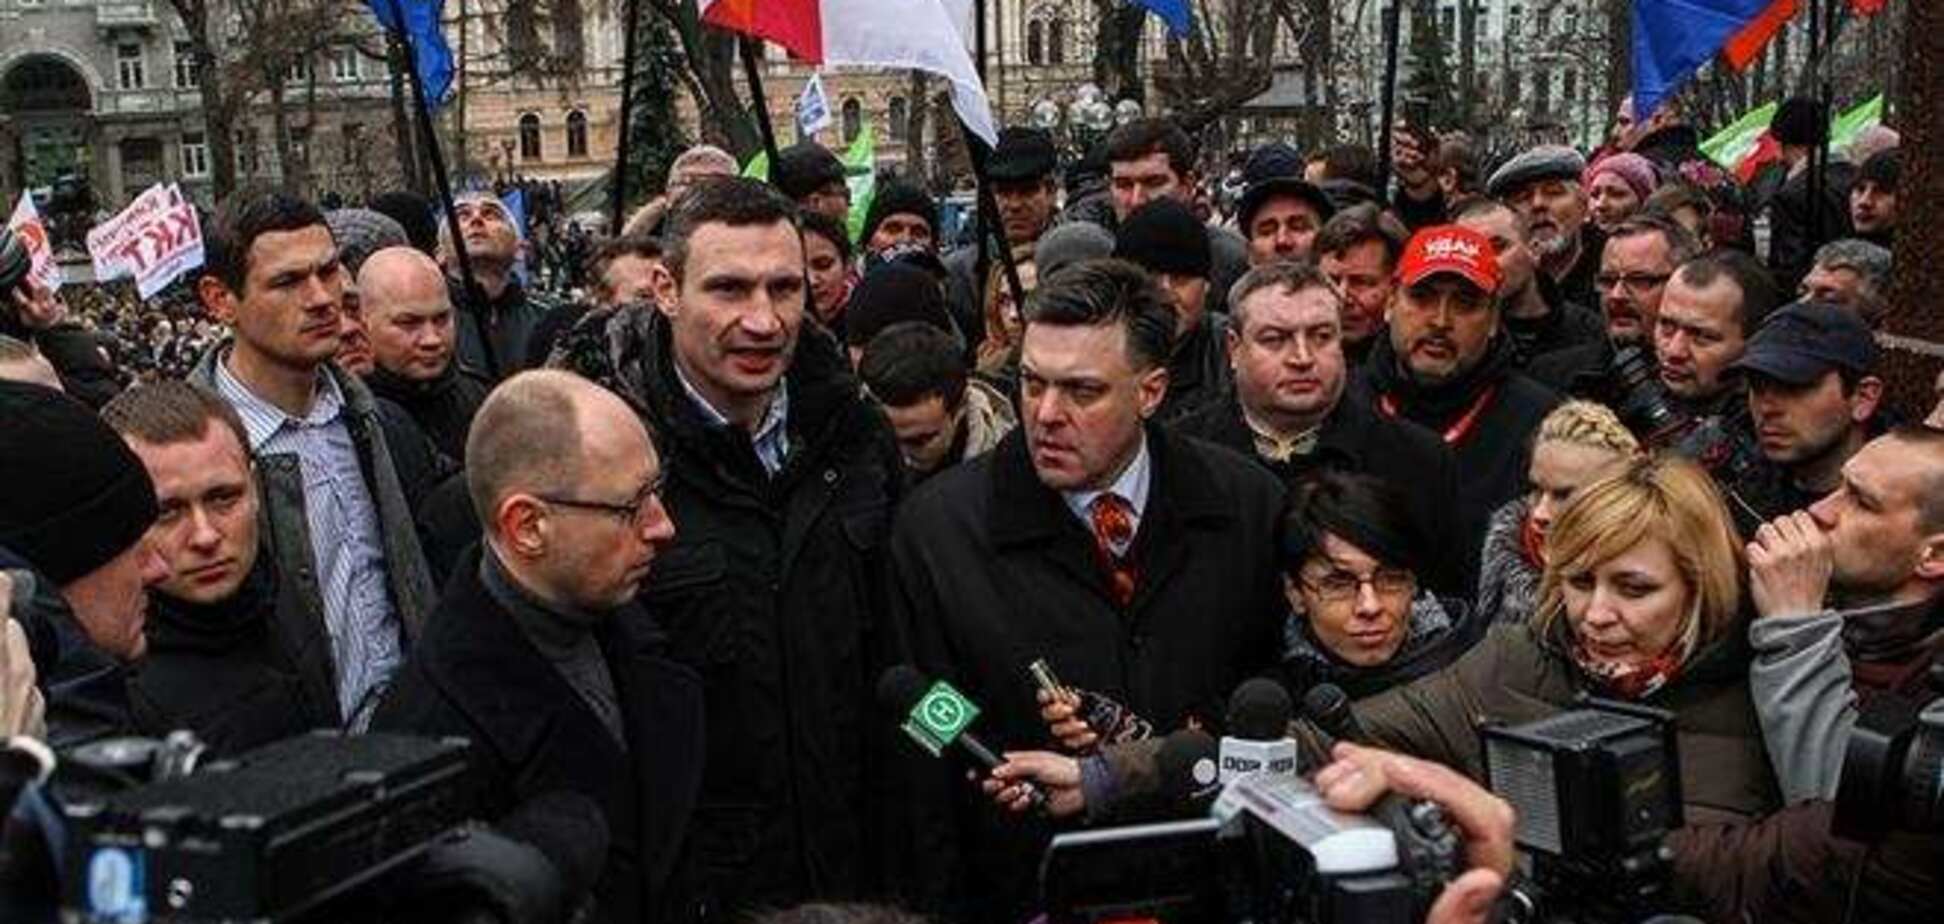 Яценюк, Кличко і Тягнибок будуть топити один одного на президентських виборах - експерт